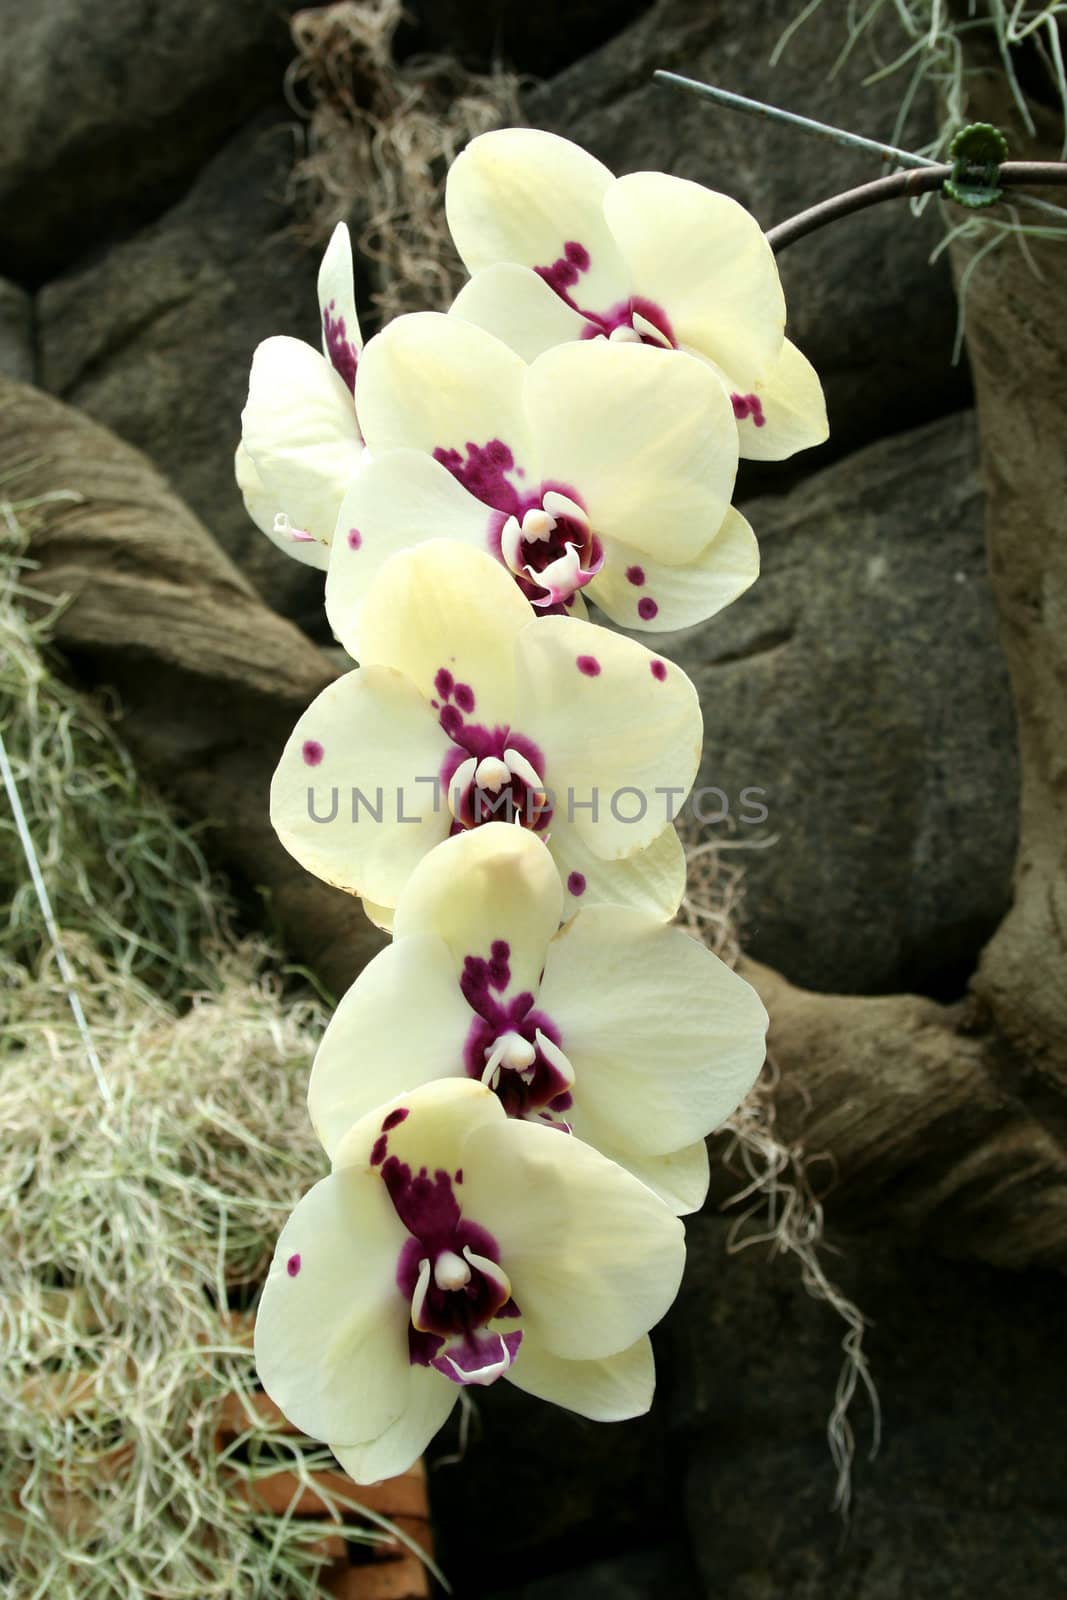 Orchids by njnightsky